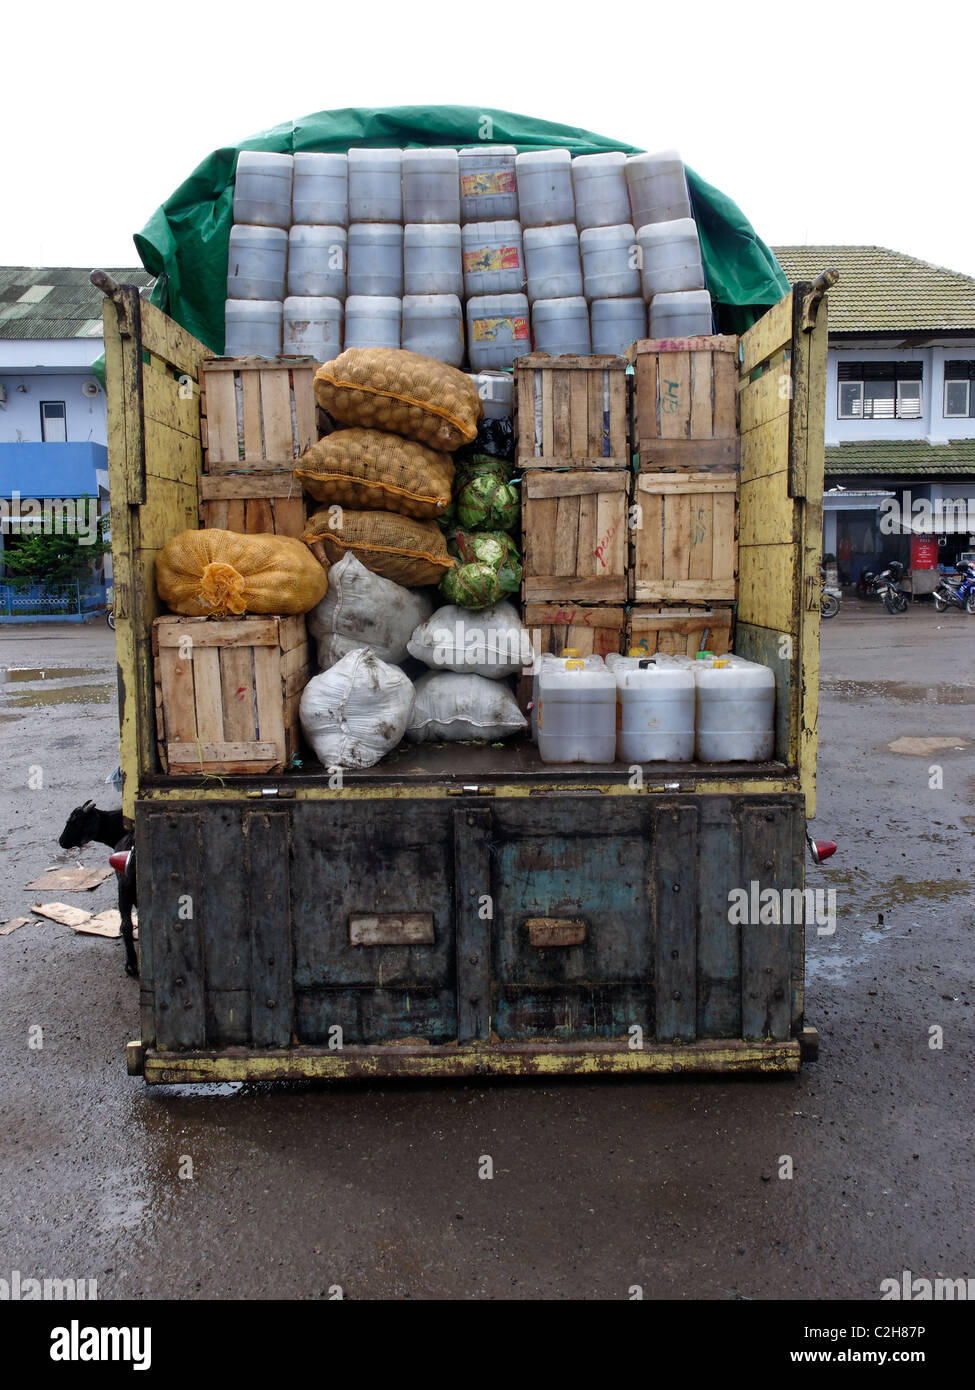 Camion chargés de marchandises, l'Indonésie, Mars 2011 Banque D'Images